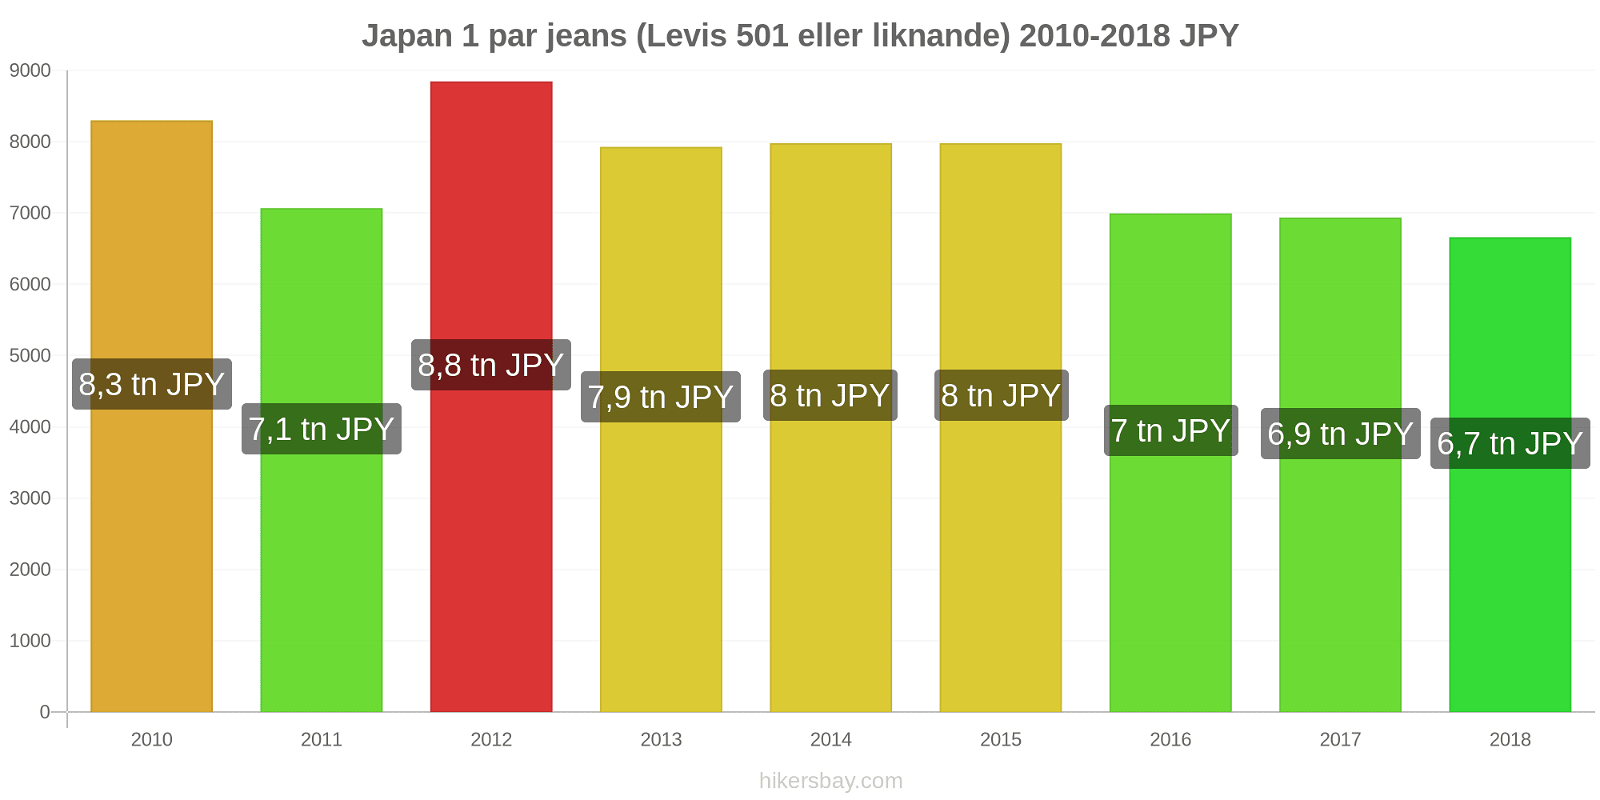 Japan prisändringar 1 par jeans (Levis 501 eller liknande) hikersbay.com